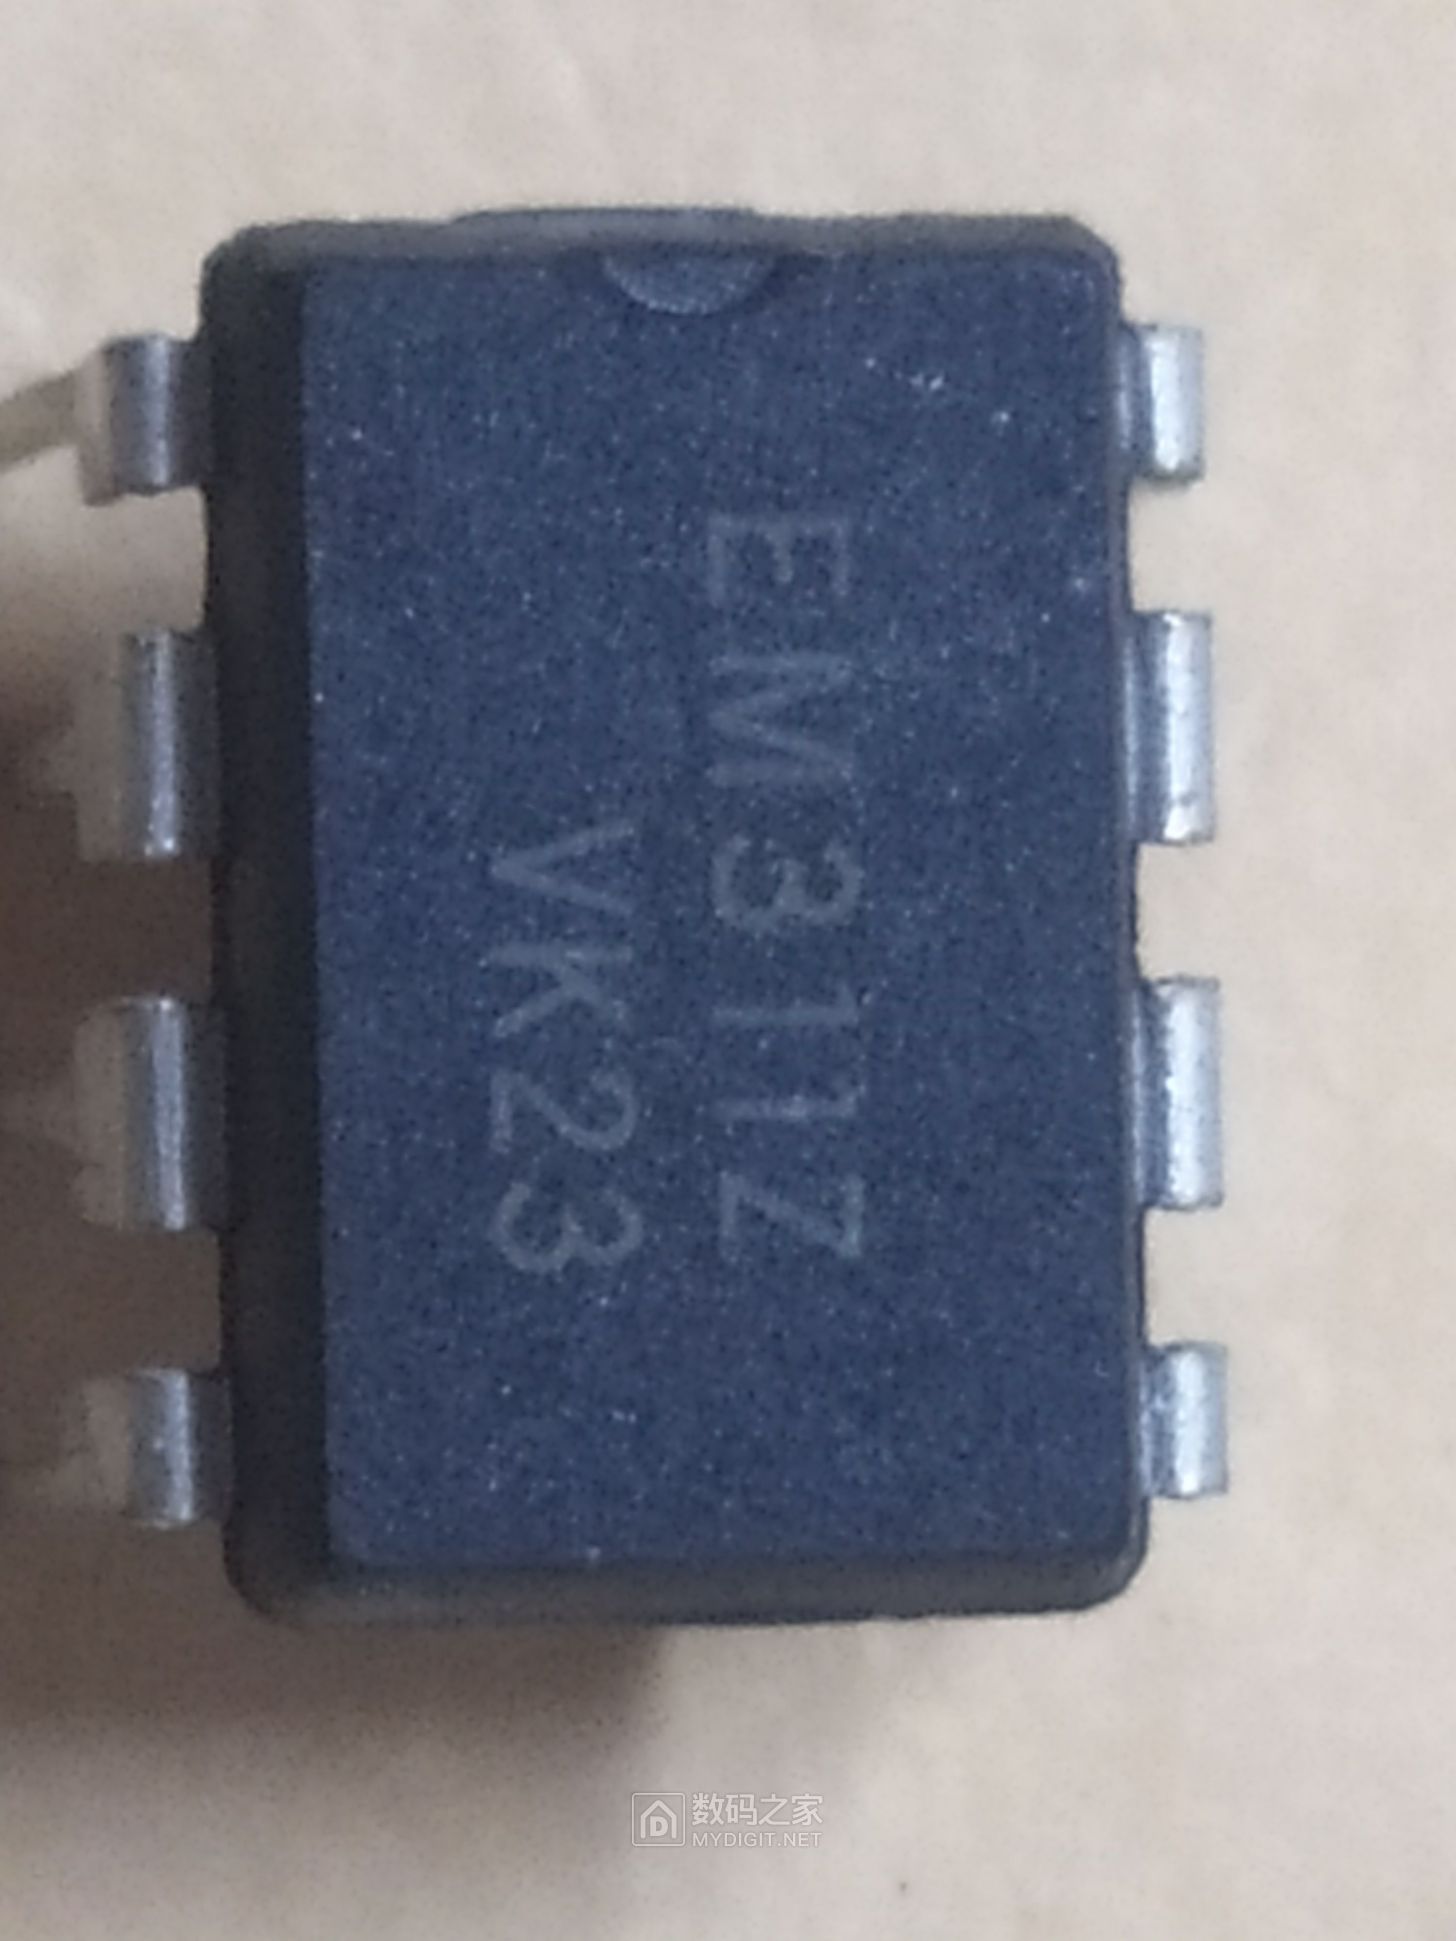 EM311Z芯片.jpg